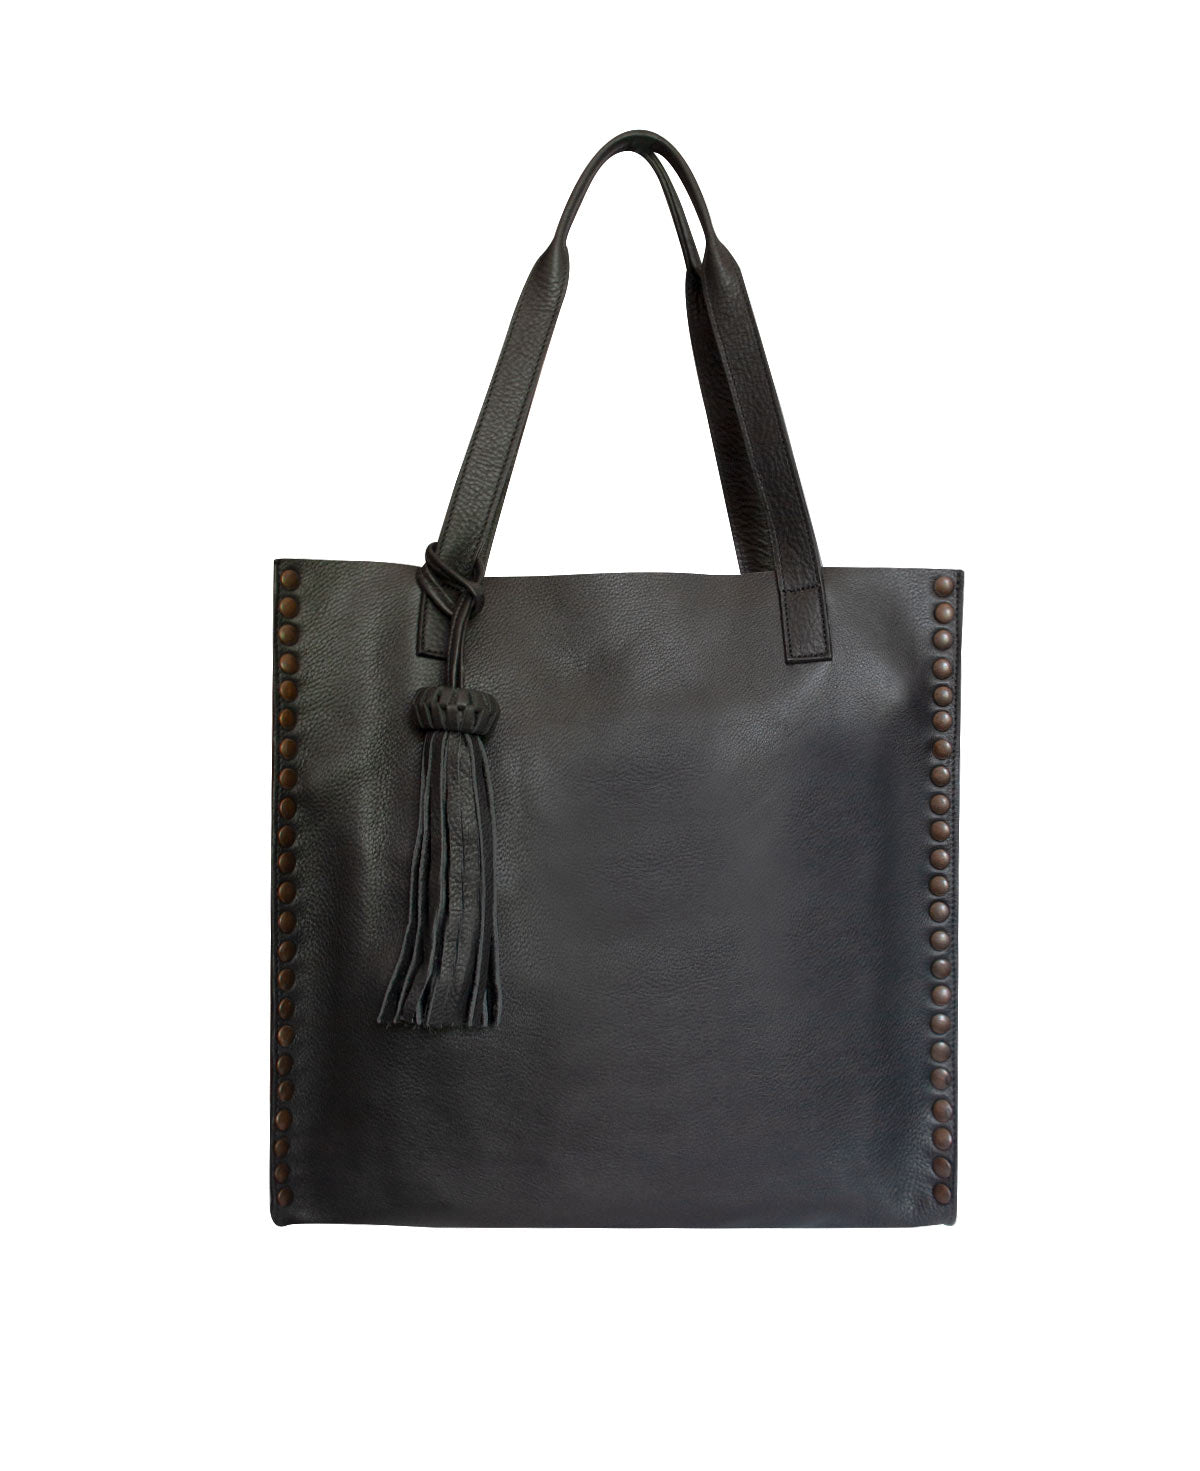 Tote Black Leather Tzeltal Bag